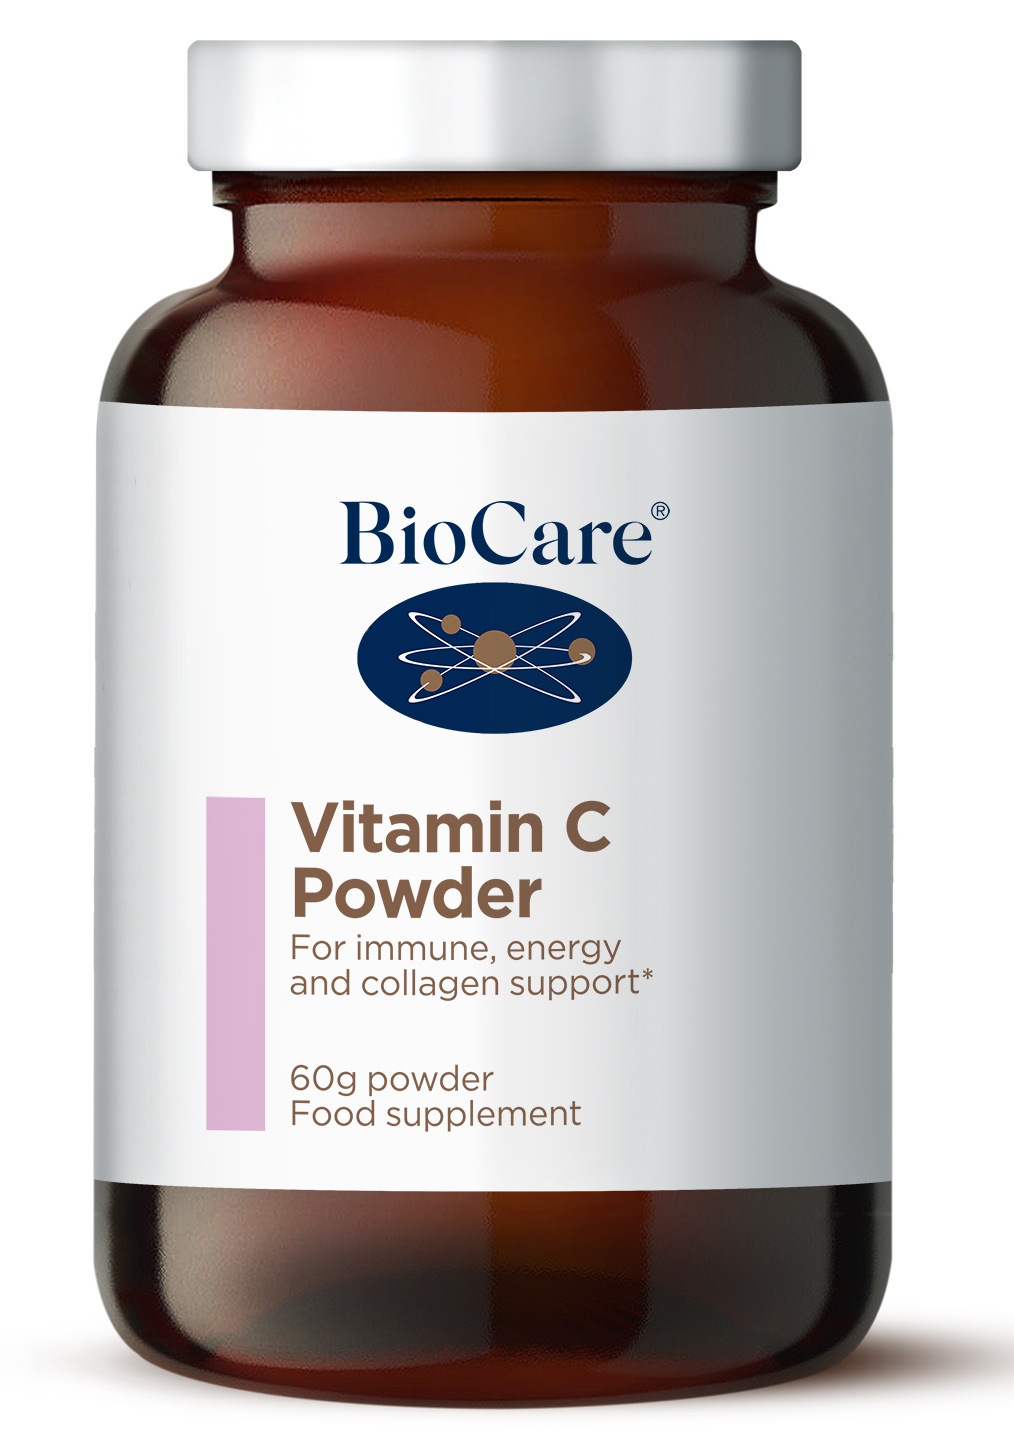 Vitamin C Powder (magnesium ascorbate) 60g